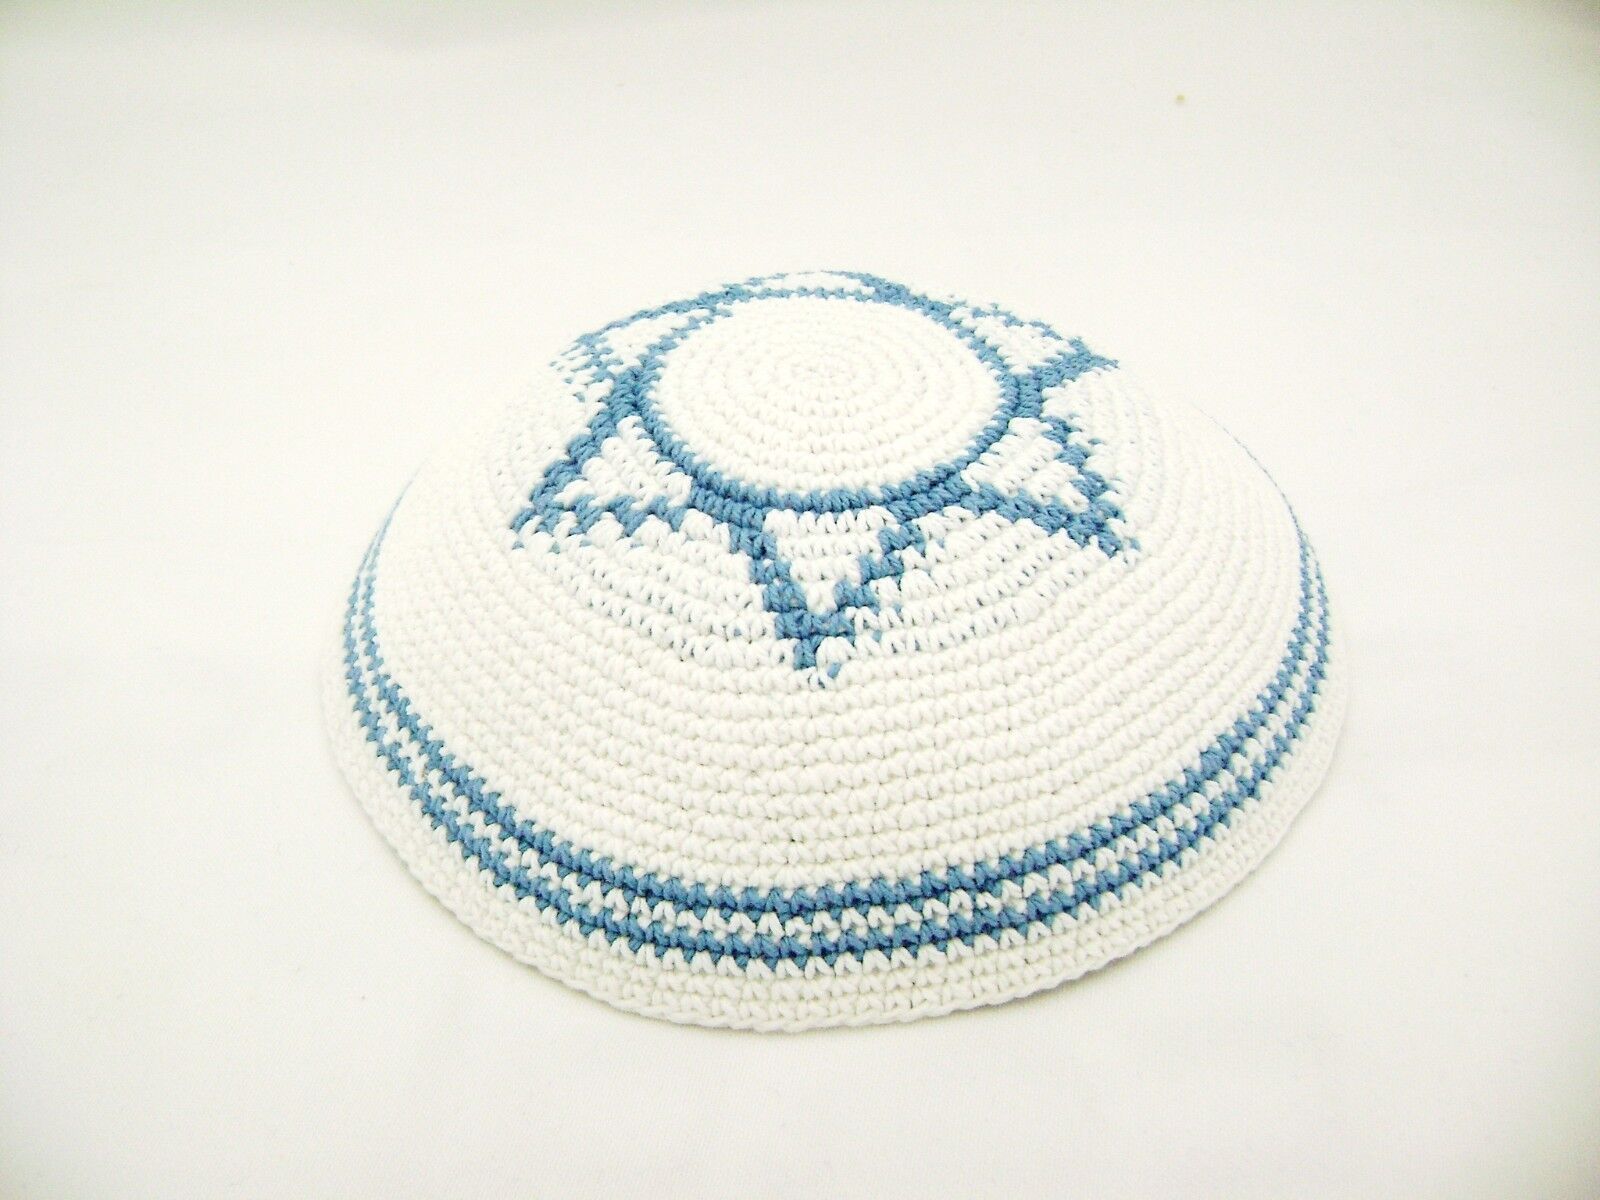 Special Kippah Kipa Hippot Judaica Gift Jewish Torah Yarmulkah Yarmulkes Yamaka 